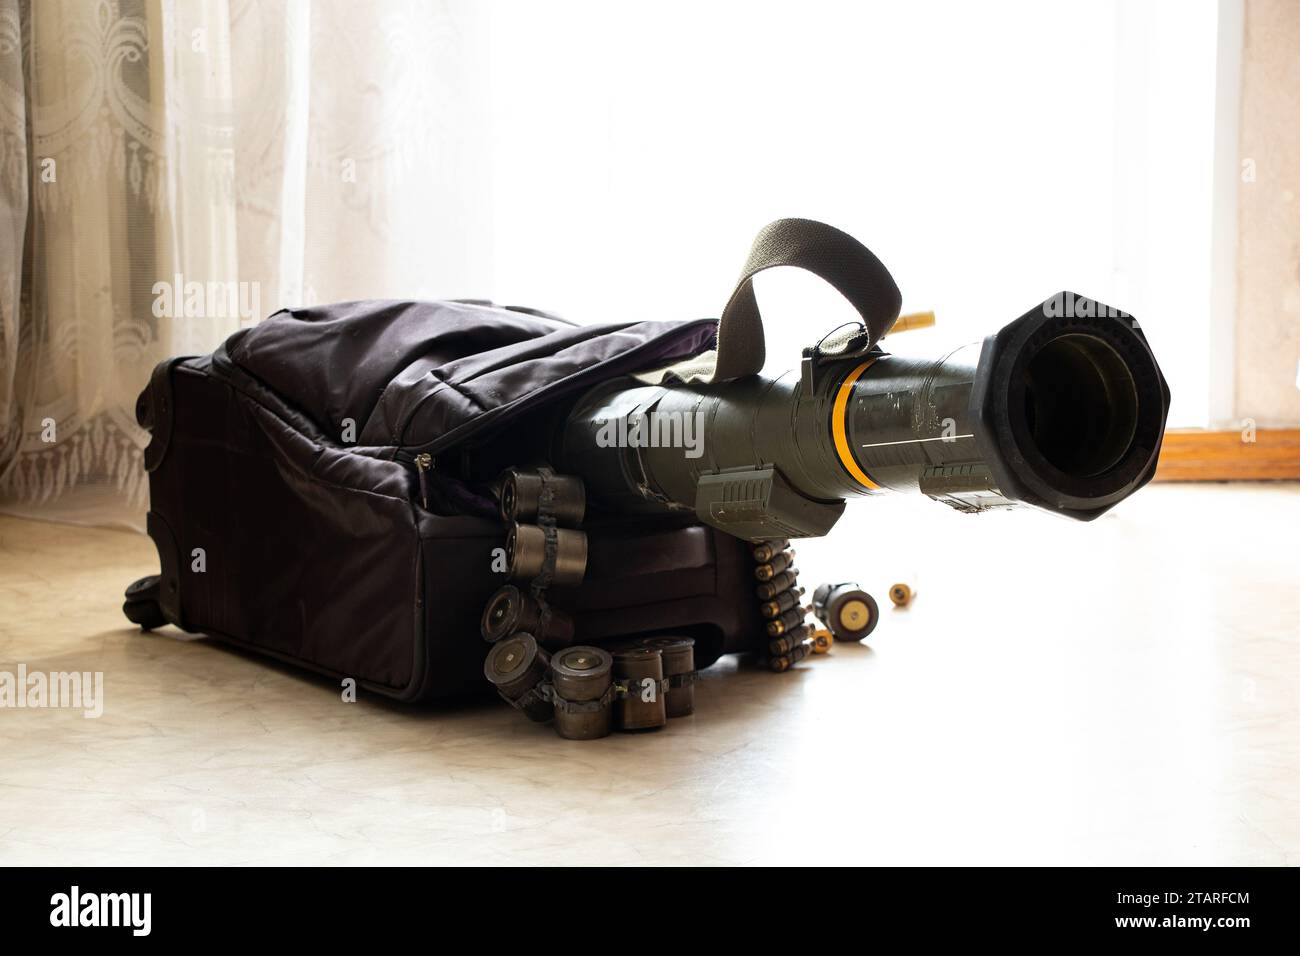 Un lanciagranate anticarro e cinture di mitragliatrici fuoriescono da una valigia sul pavimento in un appartamento in Ucraina, armi in valigia, viaggio, Foto Stock